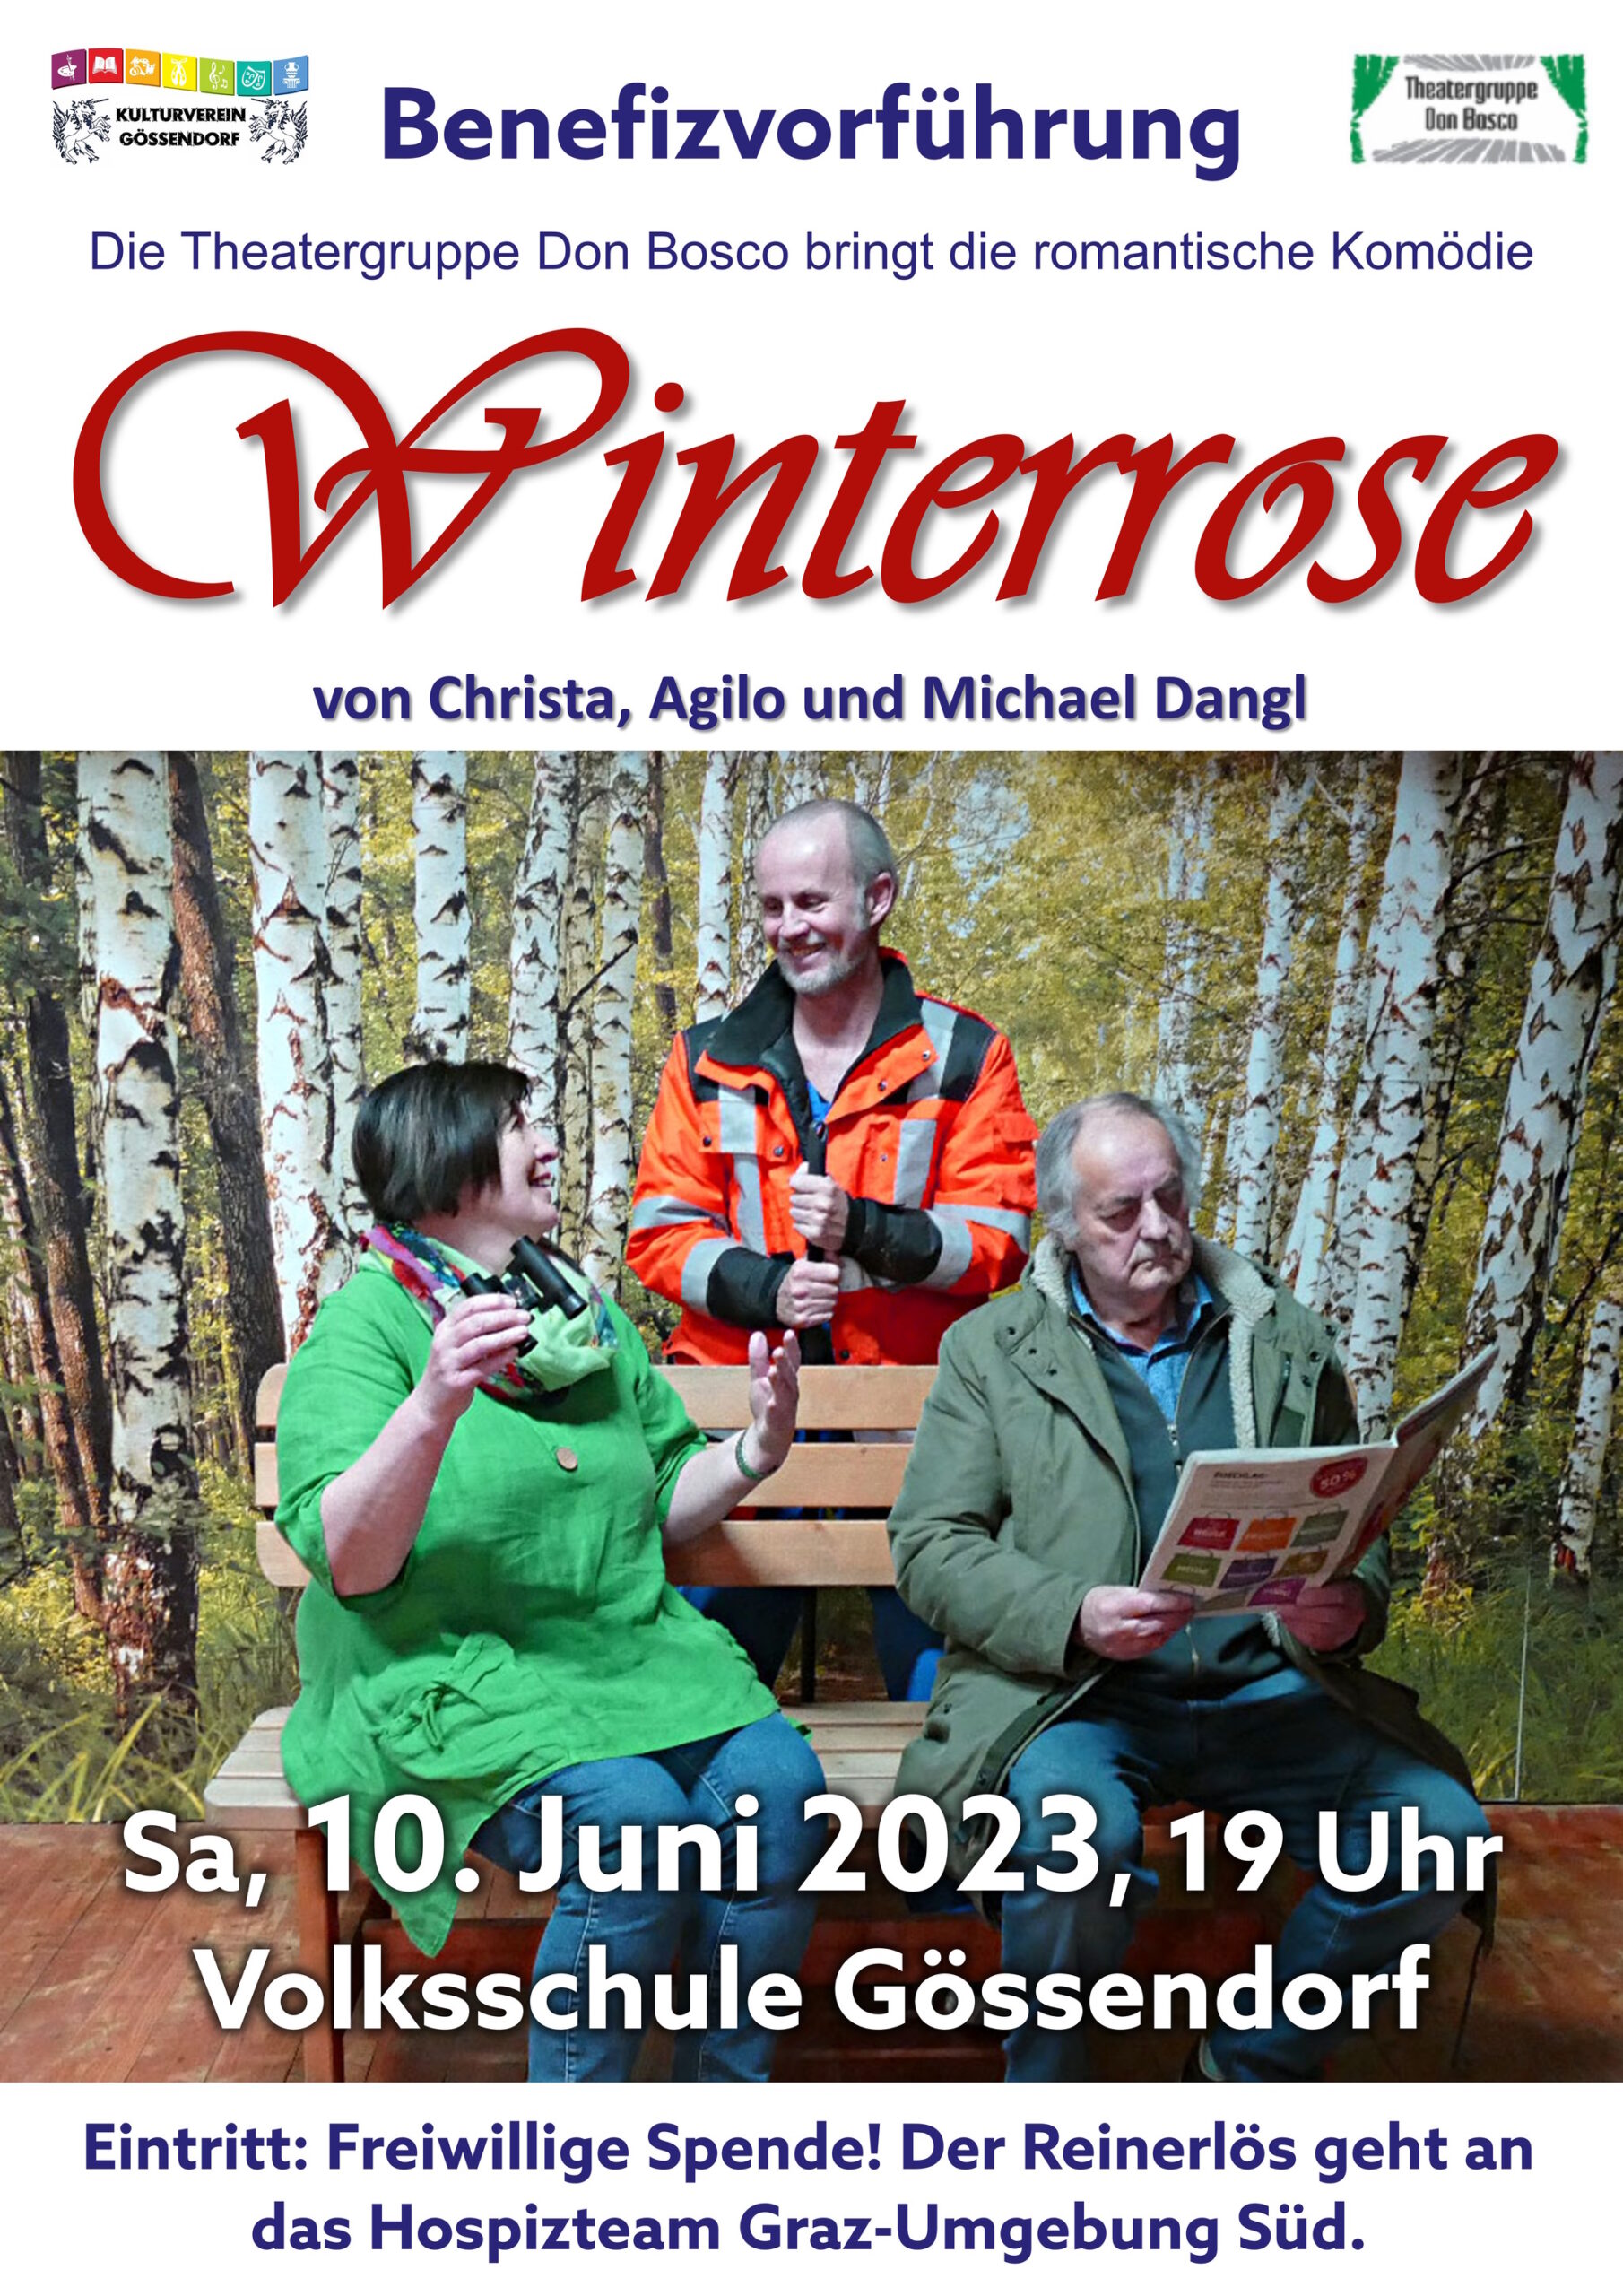 Benefizvorführung Winterrose der Theatergruppe Don Bosco in Gössendorf